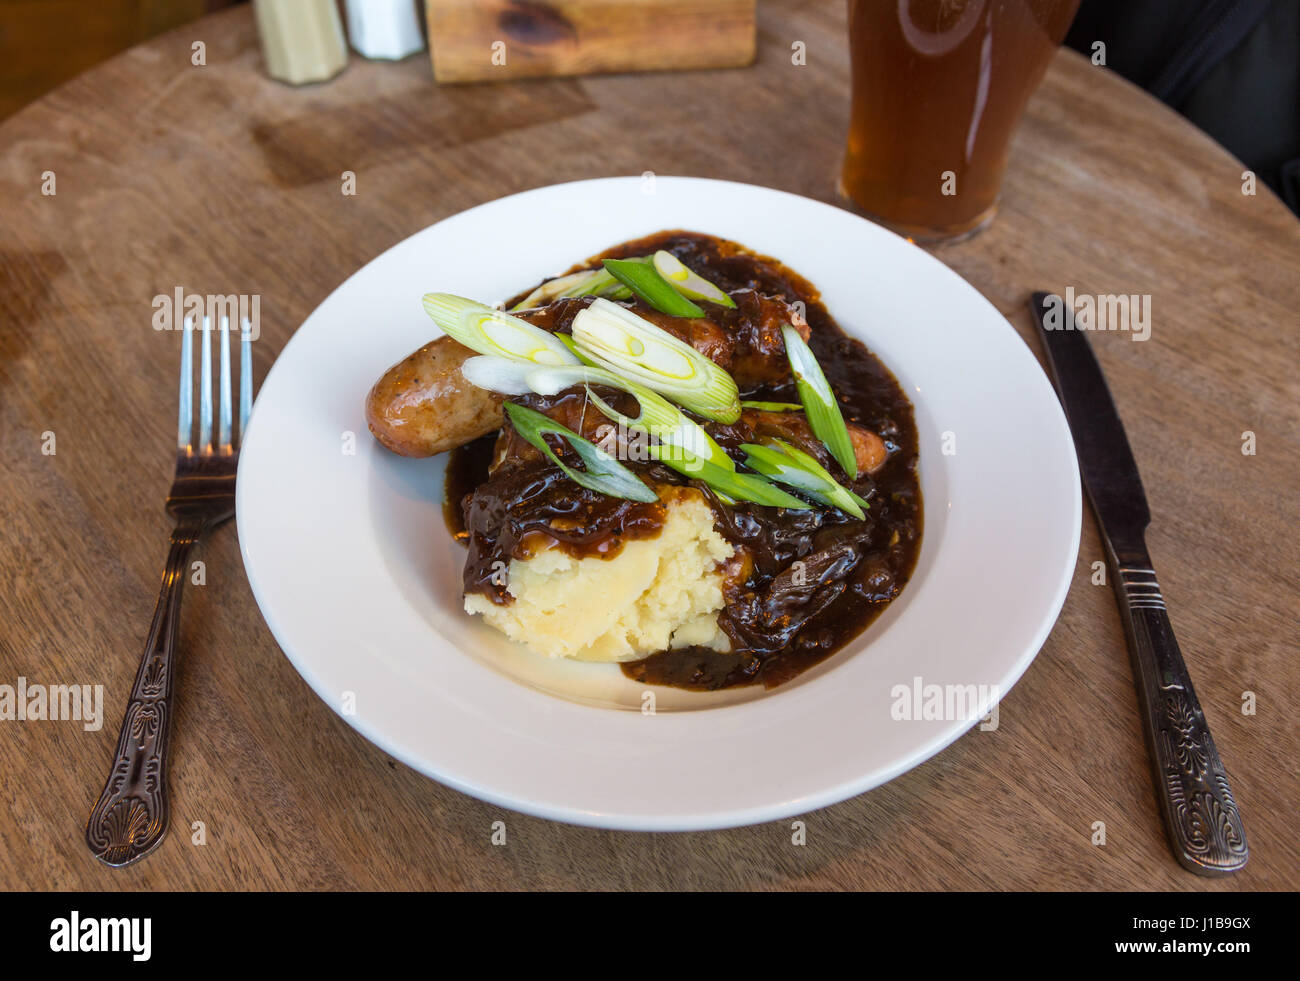 Platte des traditionellen britischen Pub essen - Teller mit Würstchen und Kartoffelbrei mit Zwiebel Soße und ein Pint Ale, Großbritannien Stockfoto